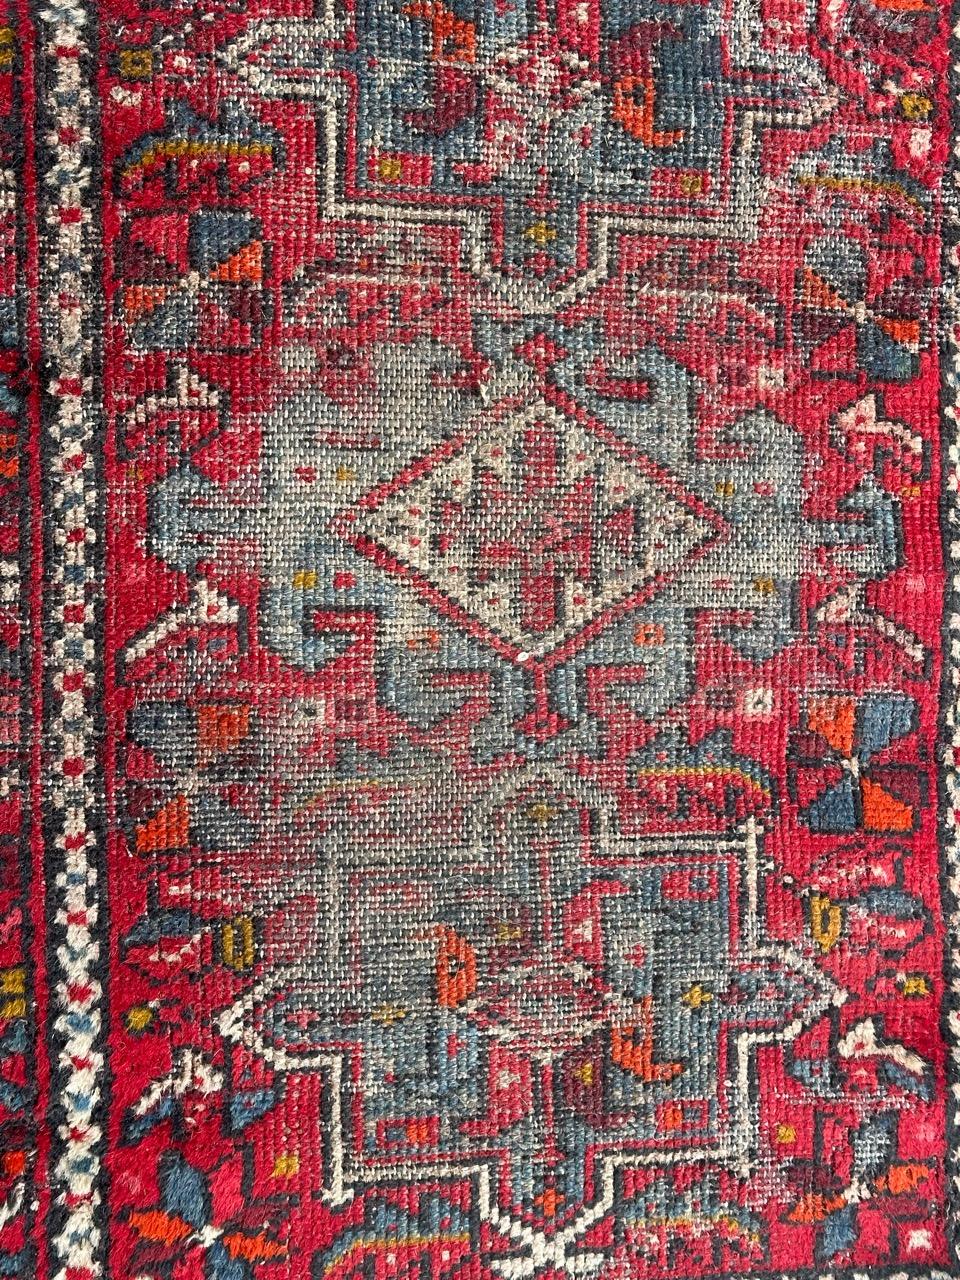 Hübscher kleiner Heriz-Teppich aus der Mitte des Jahrhunderts mit geometrischem Muster und schönen Farben, komplett handgeknüpft mit Wolle auf Baumwollbasis 
Trägt

✨✨✨
